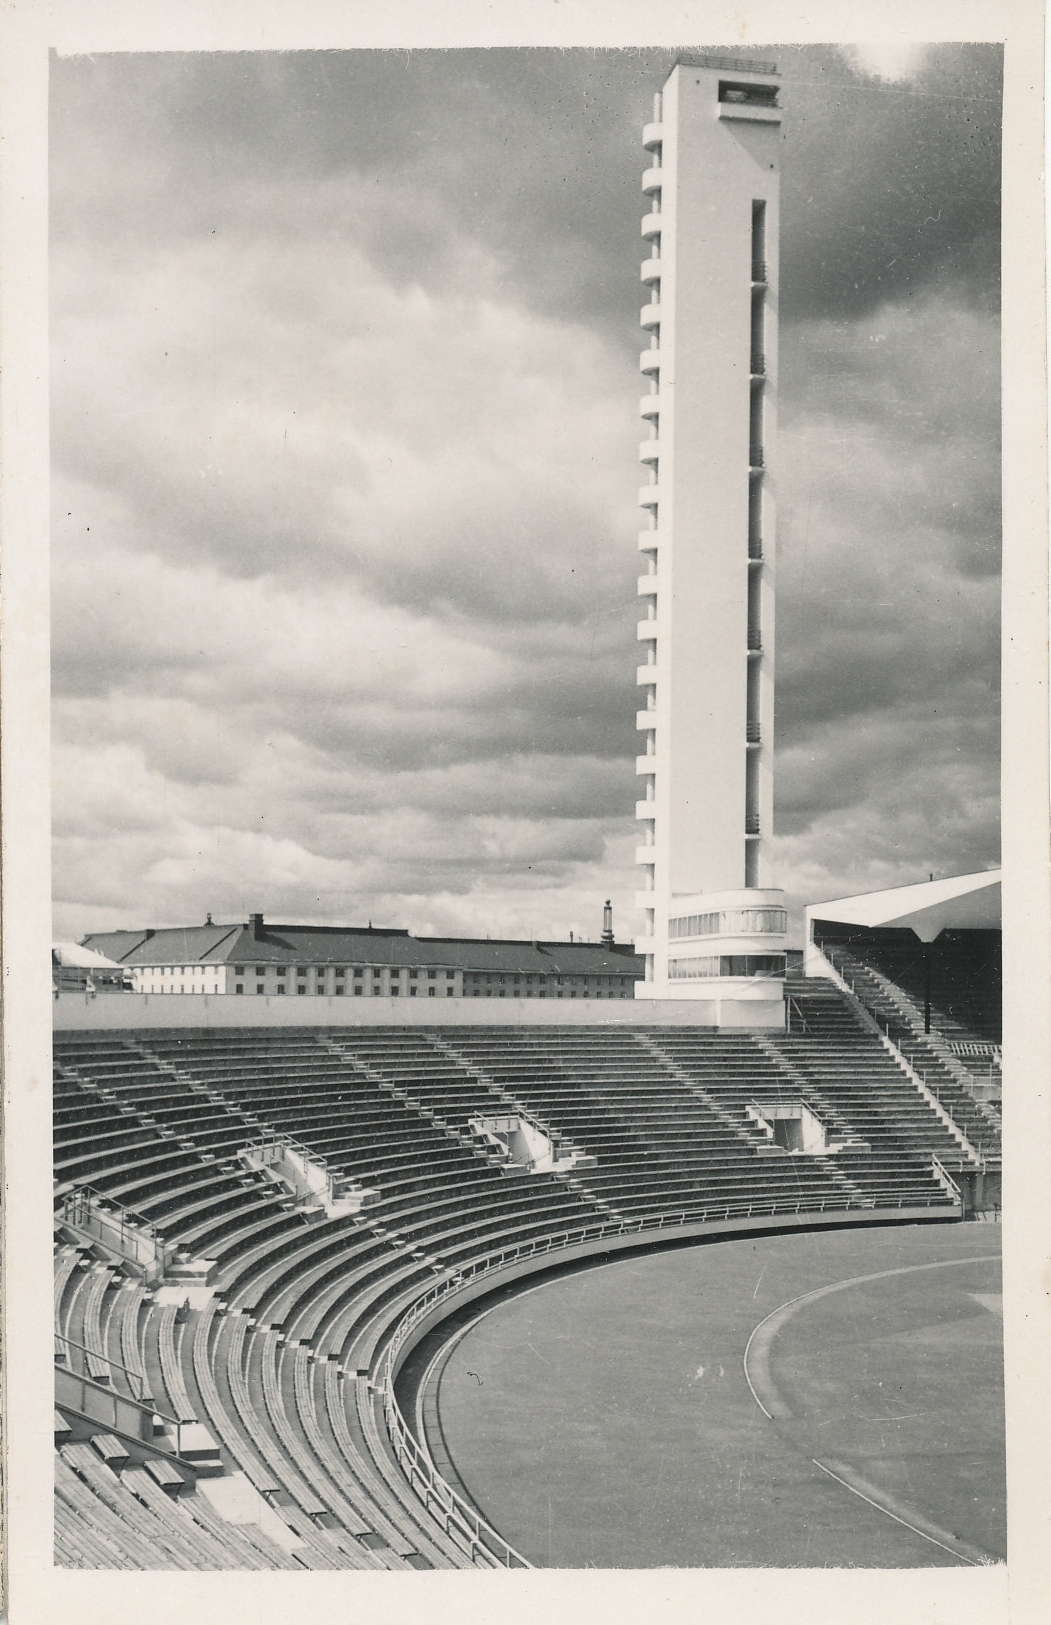 Helsingi olümpiastaadion